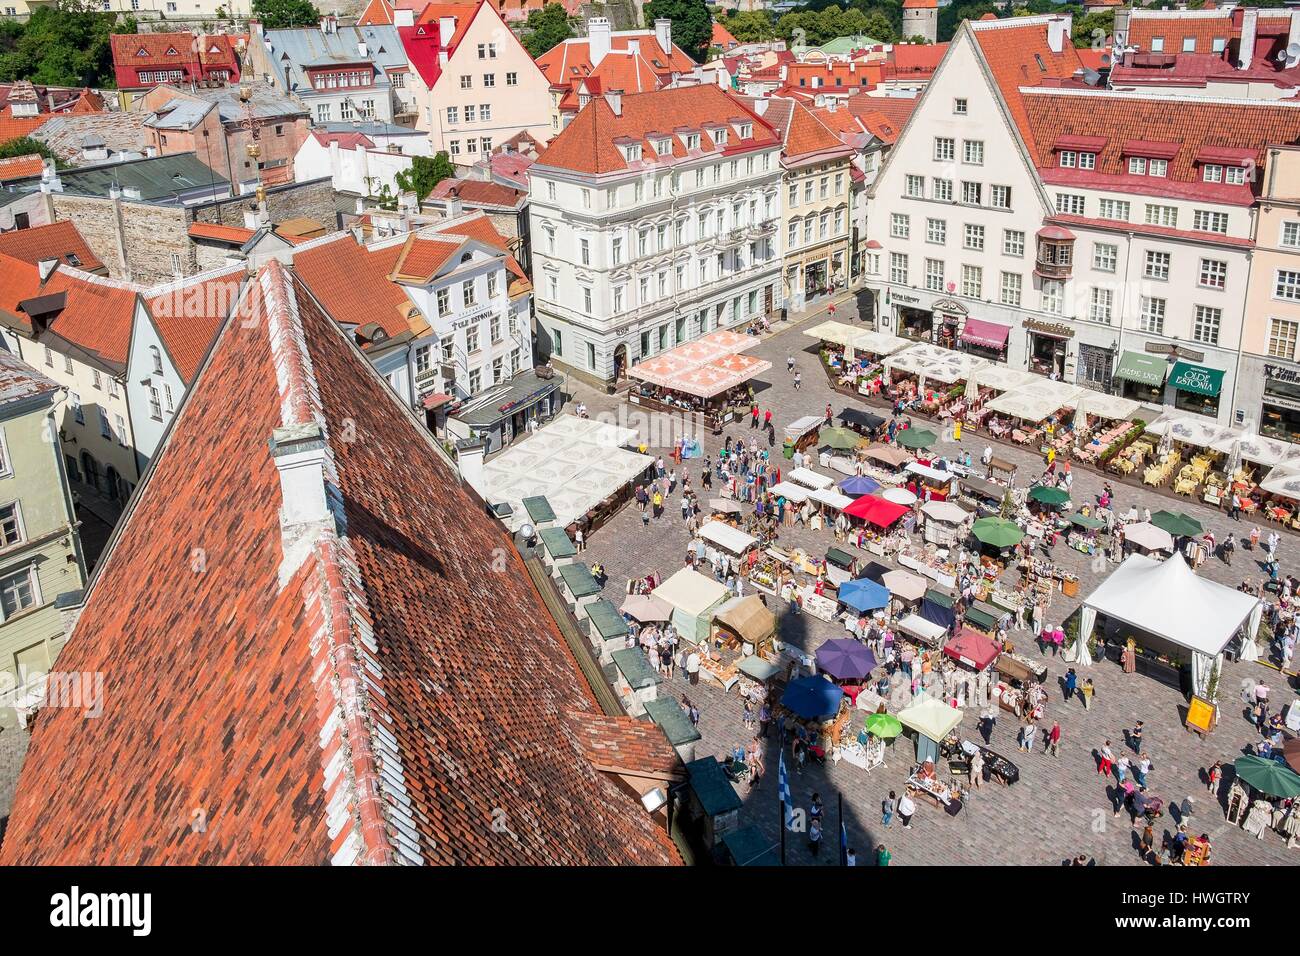 Estland (Baltikum), Harju Region, Tallinn, Altstadt als Weltkulturerbe der UNESCO, dem Rathausplatz während der Mittelalter-feste aufgeführt Stockfoto